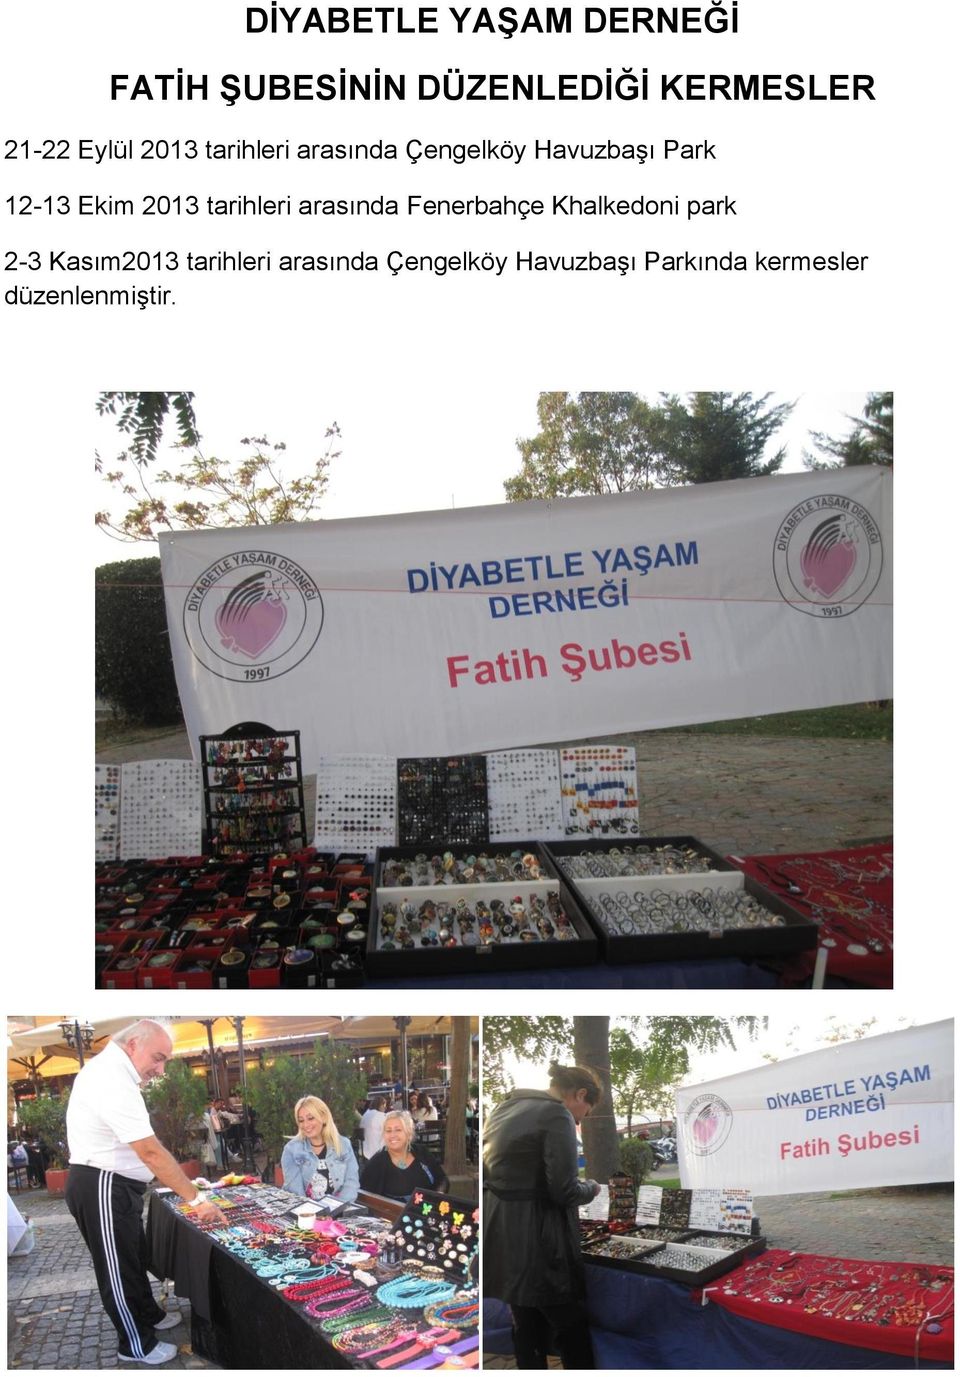 2013 tarihleri arasında Fenerbahçe Khalkedoni park 2-3 Kasım2013